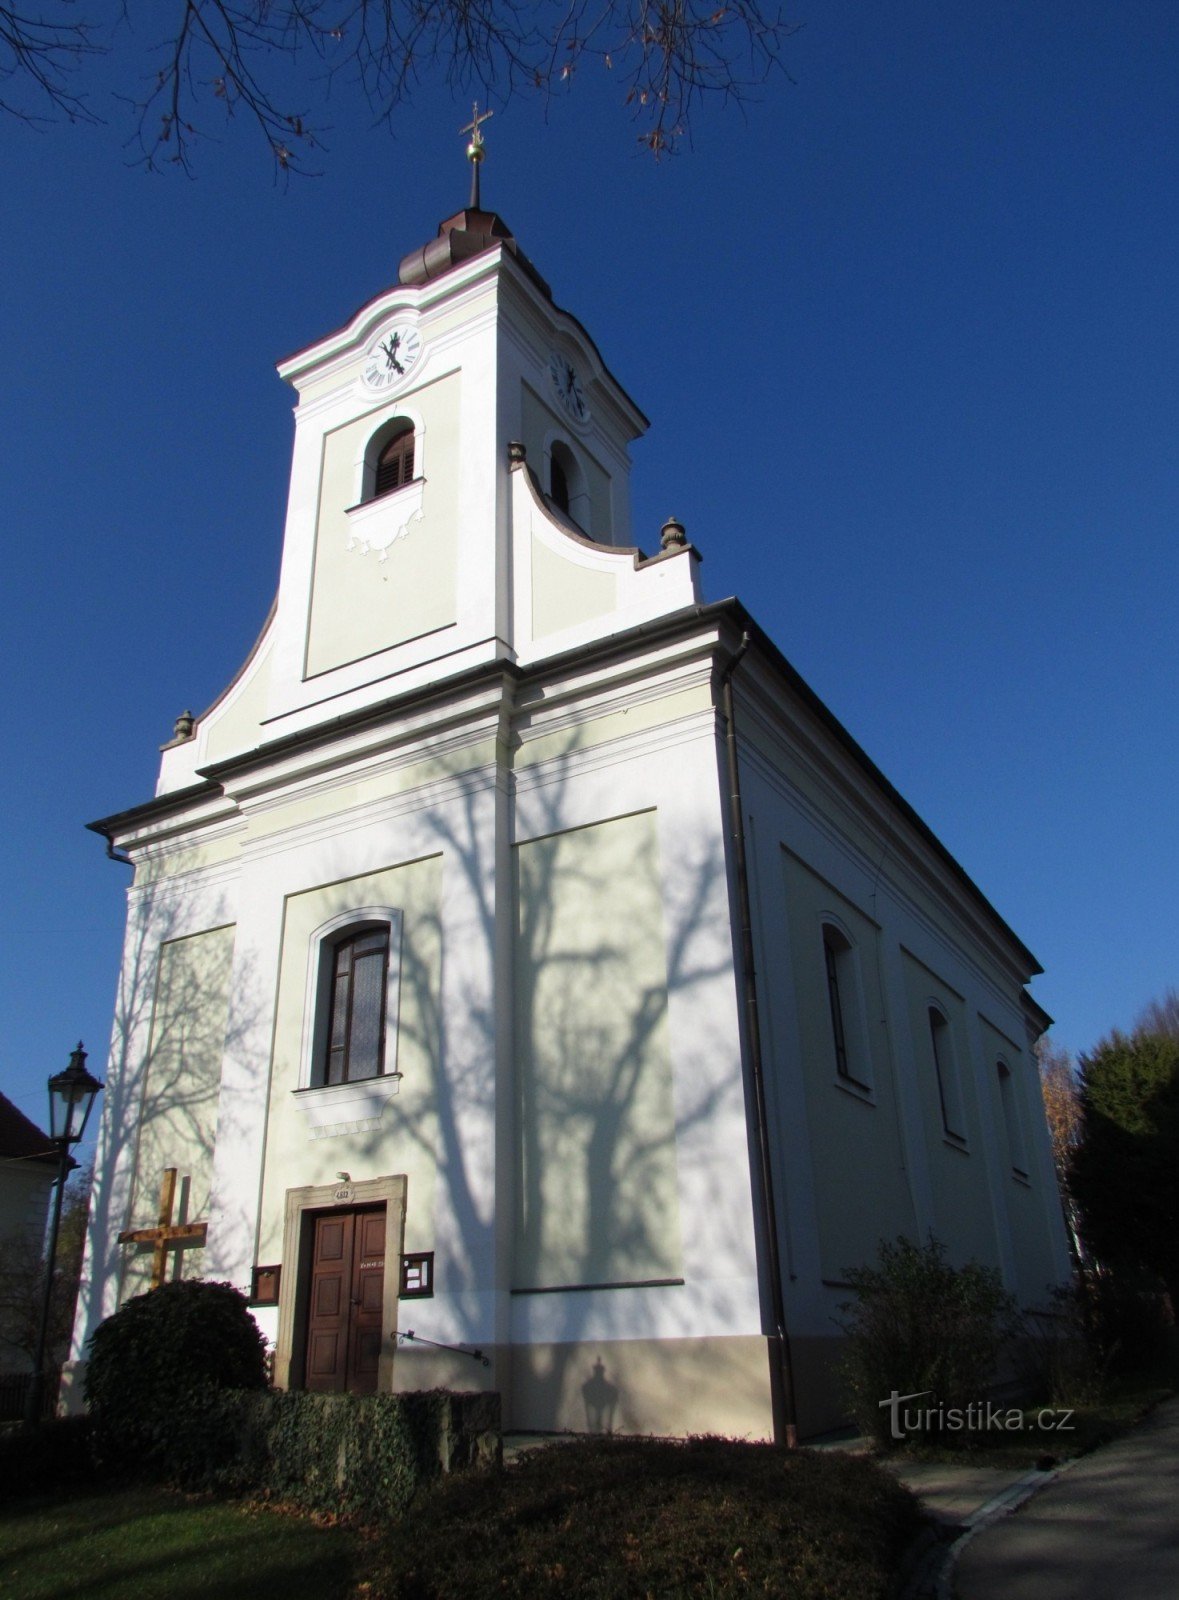 ルコフの聖ヨセフ教会と牧師館